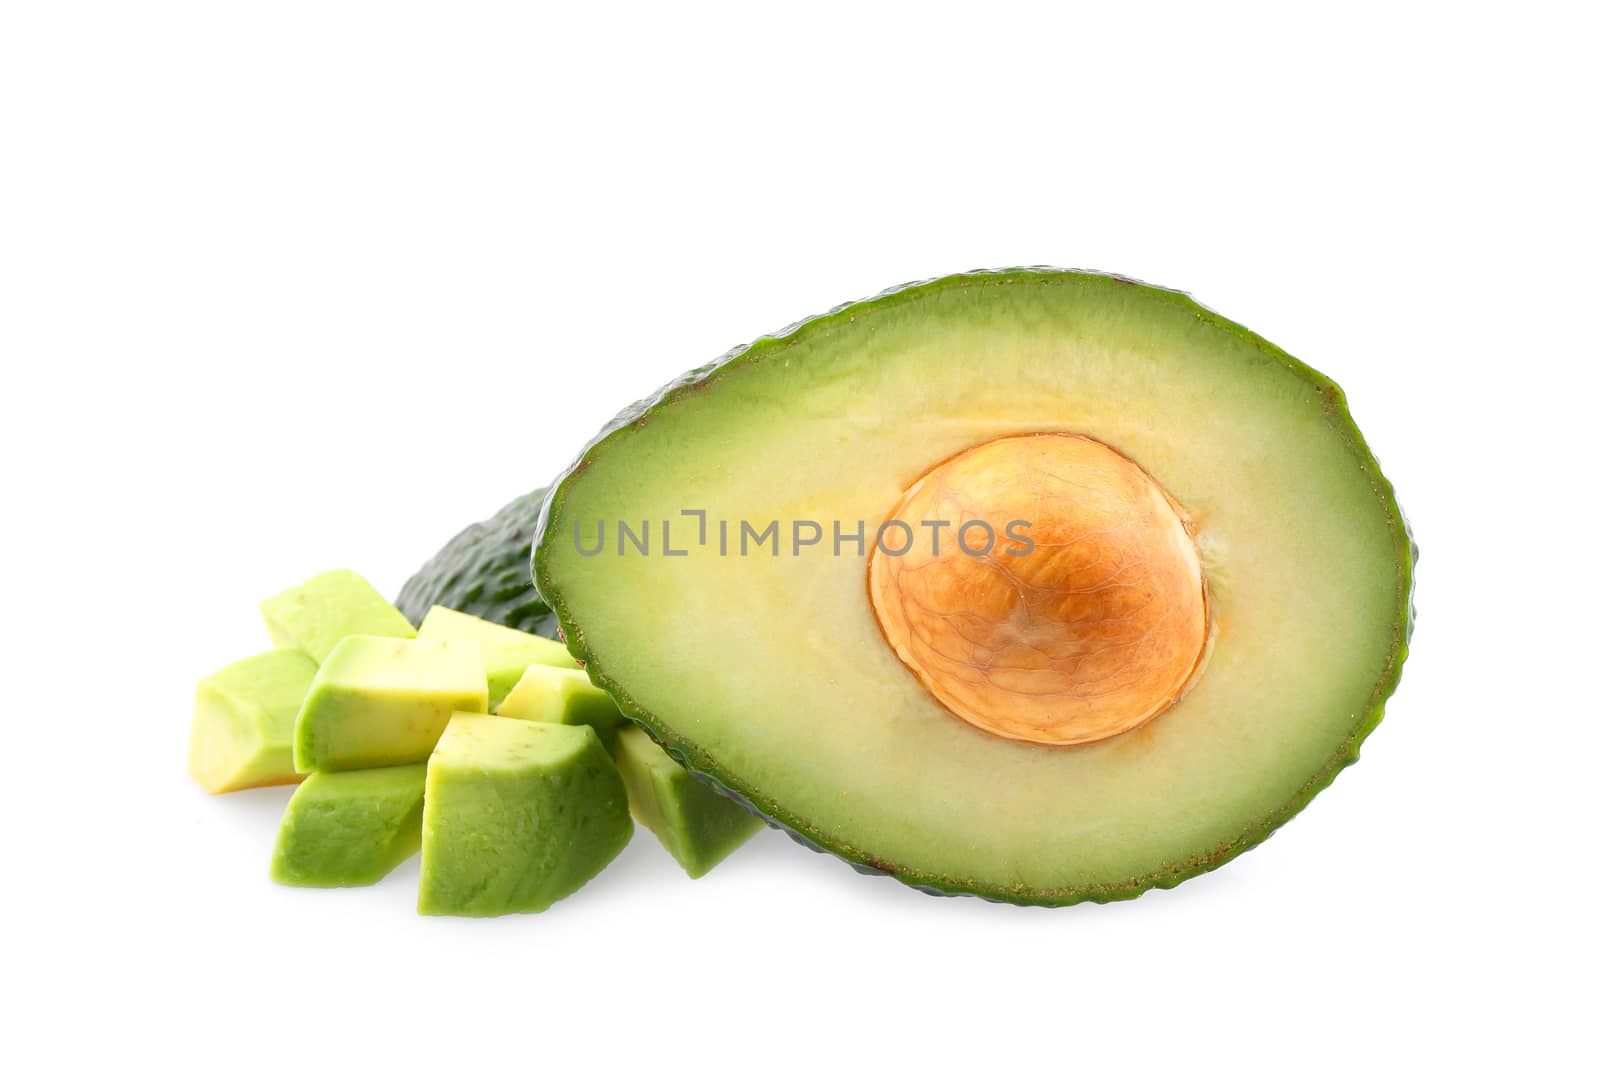 Fresh avocado fruits isolated on white background by freedomnaruk